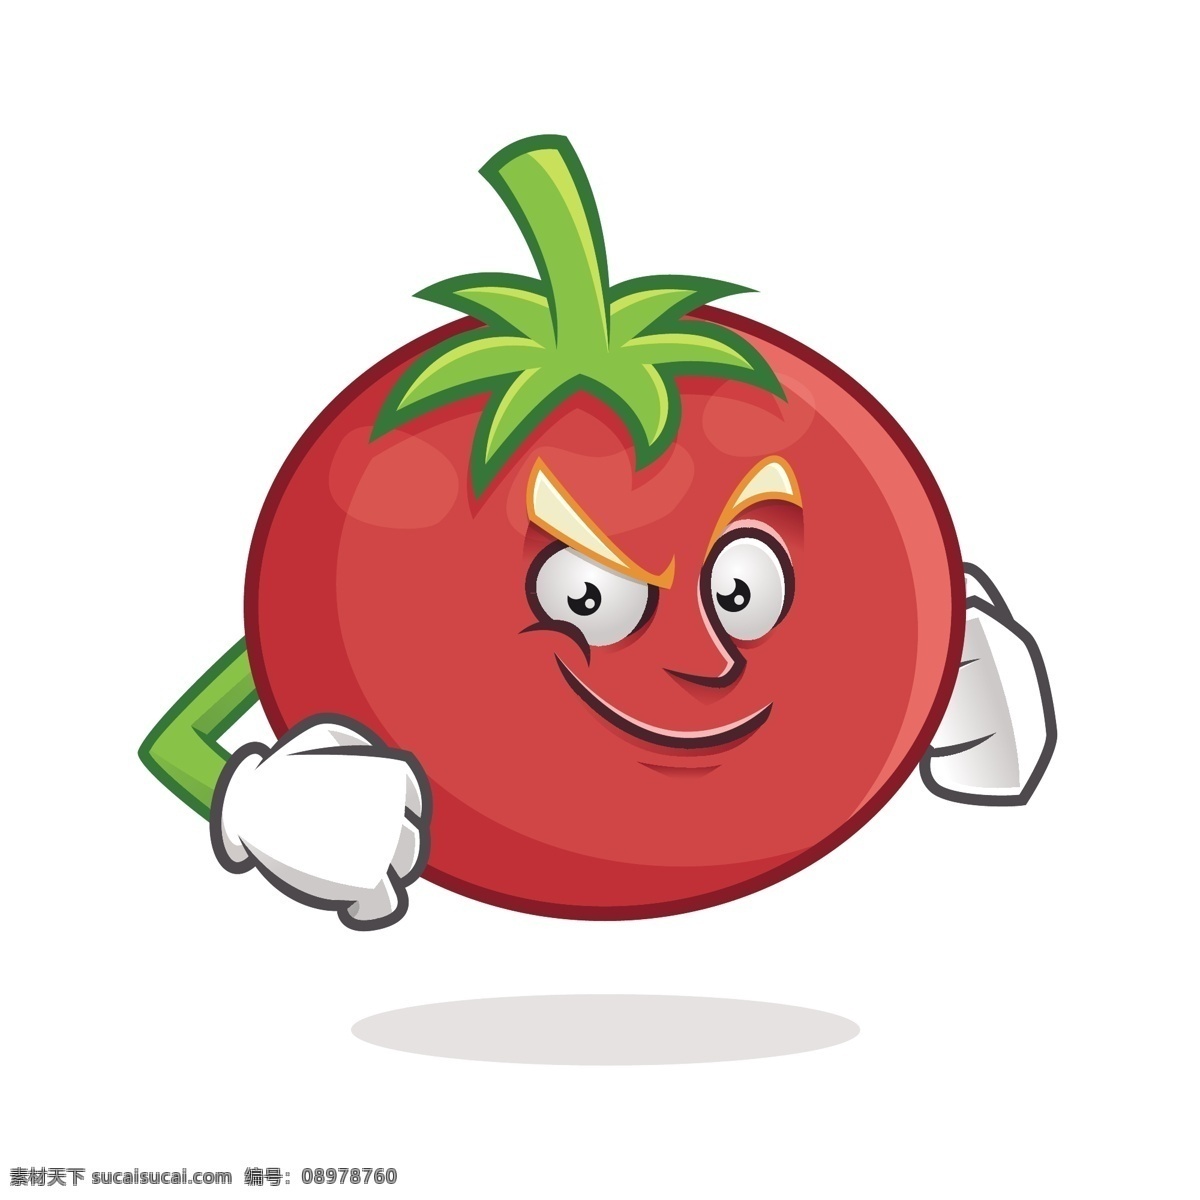 叉腰 手势 西红柿 矢量 叉腰手势 姿势 动作 动作姿势 卡通 卡通西红柿 红色 红色西红柿